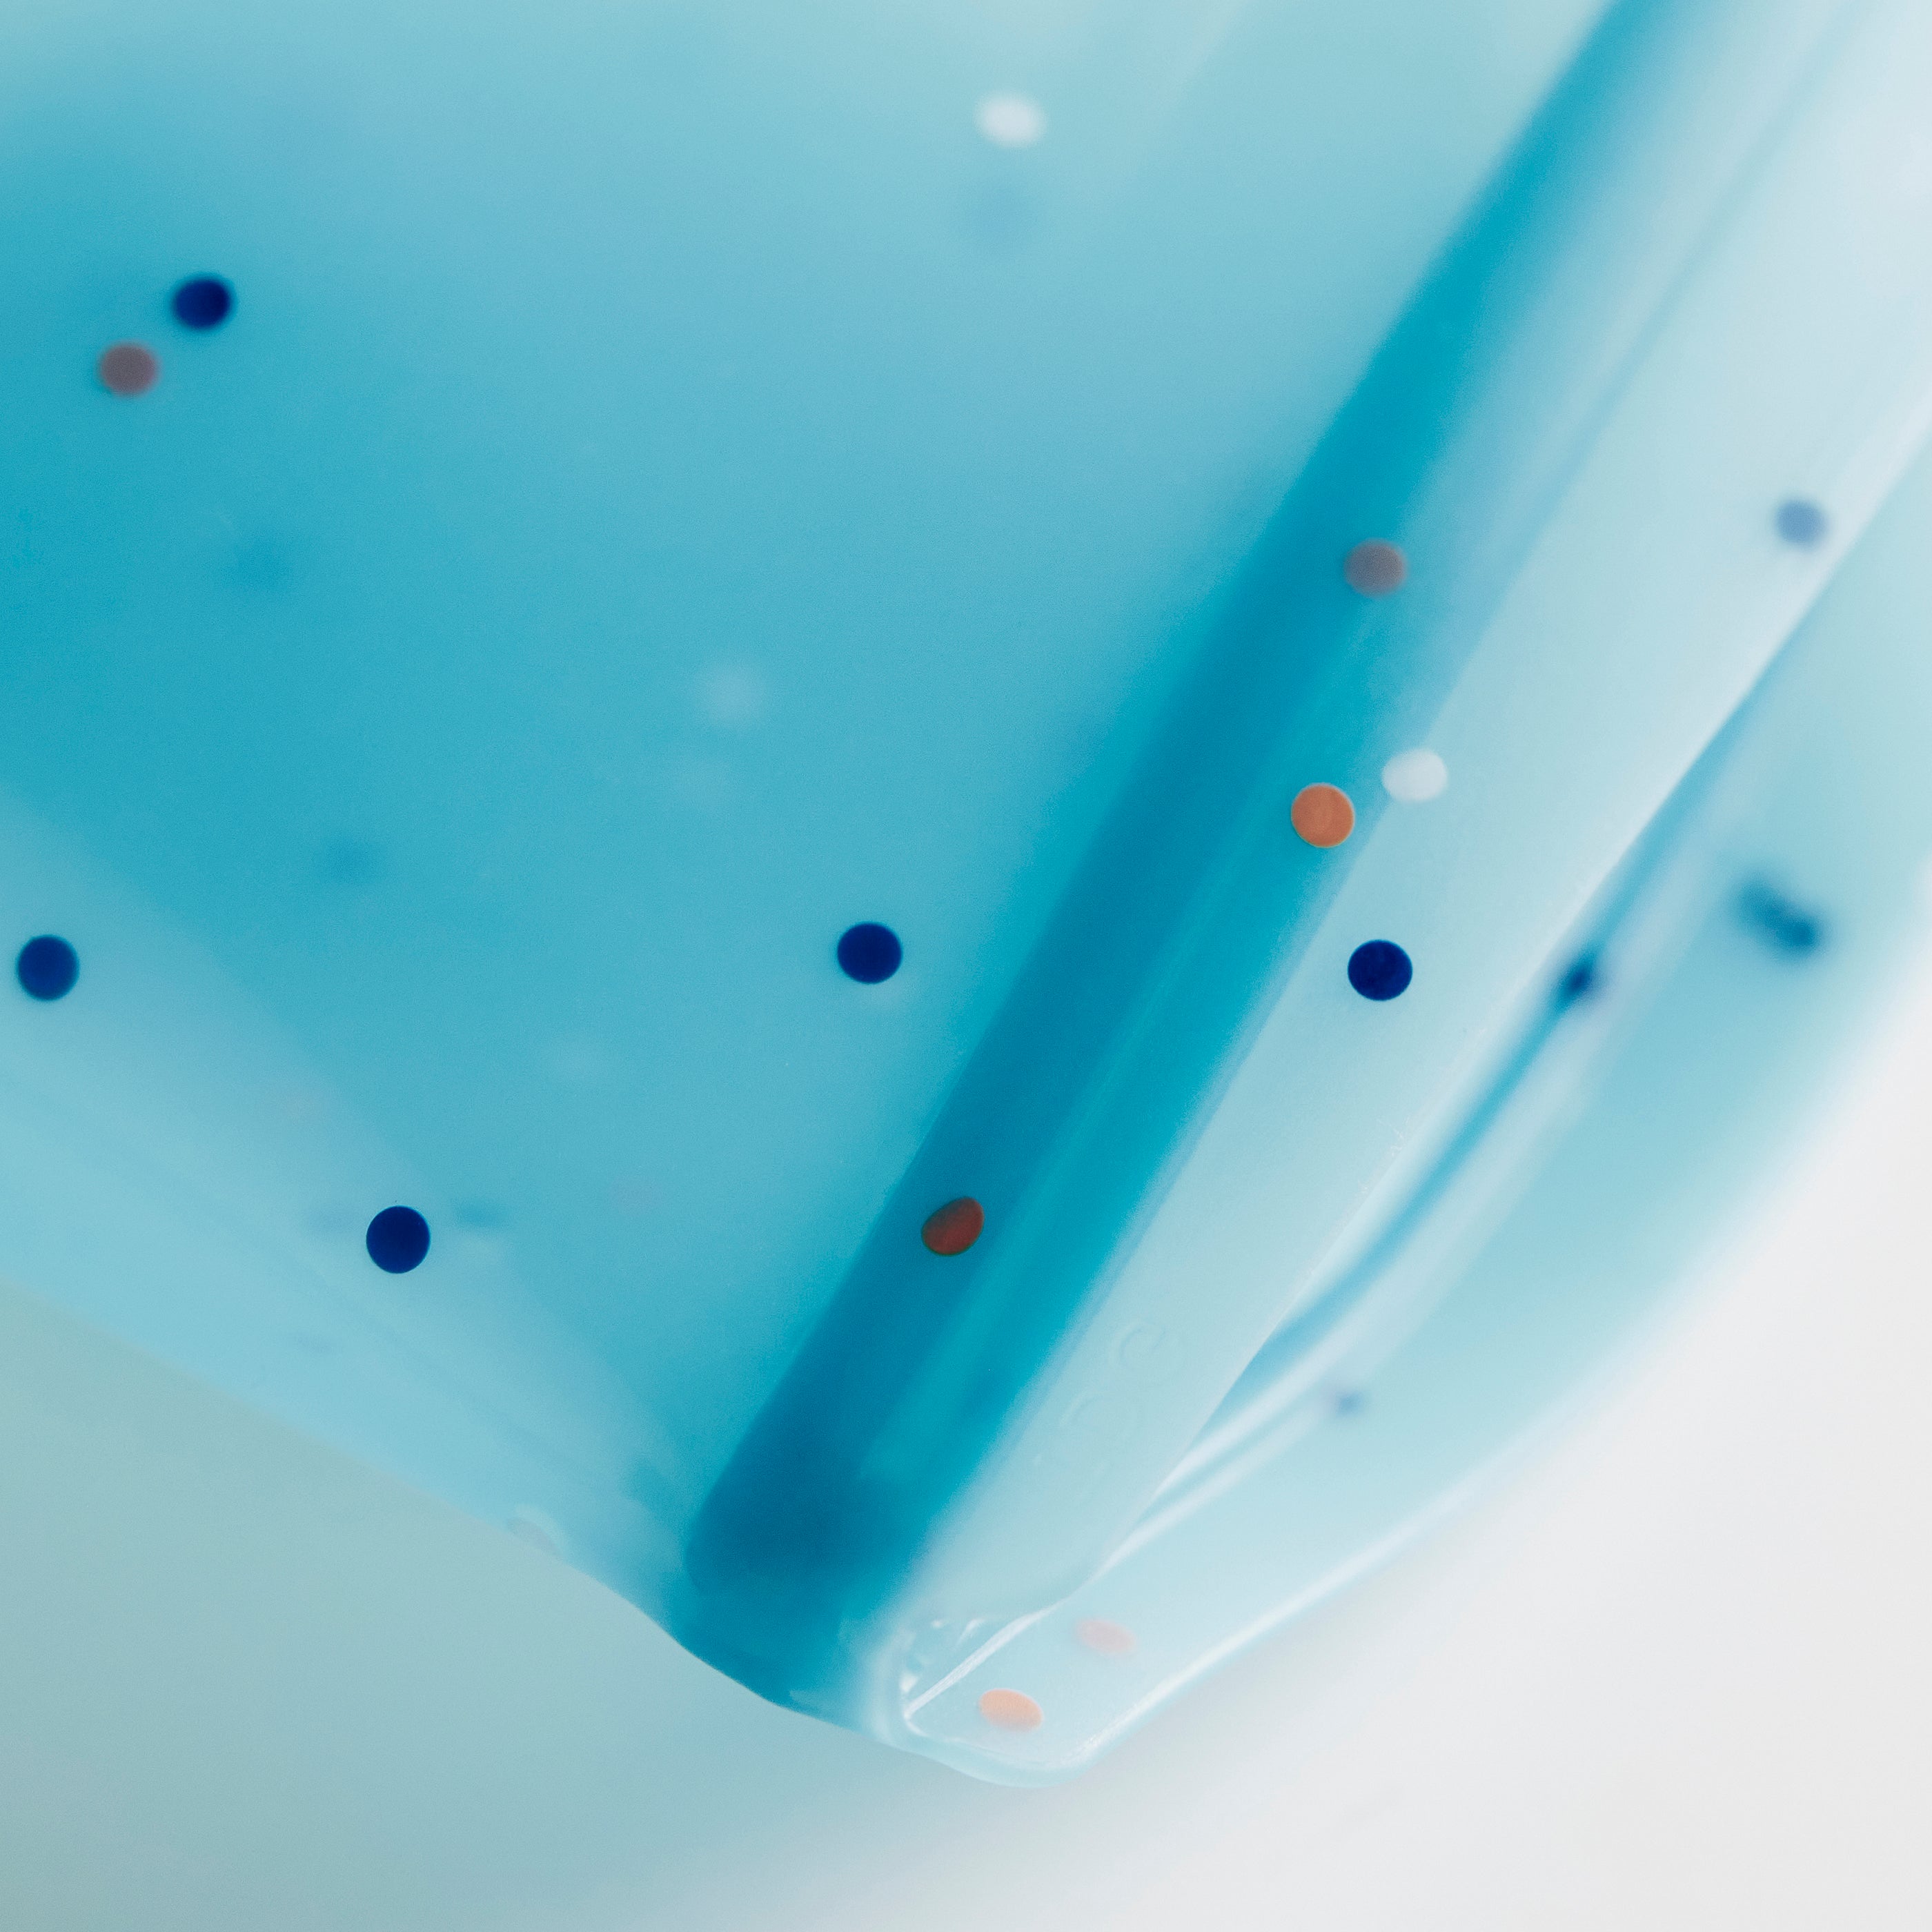 sea spray: stasher reusable silicone bowl